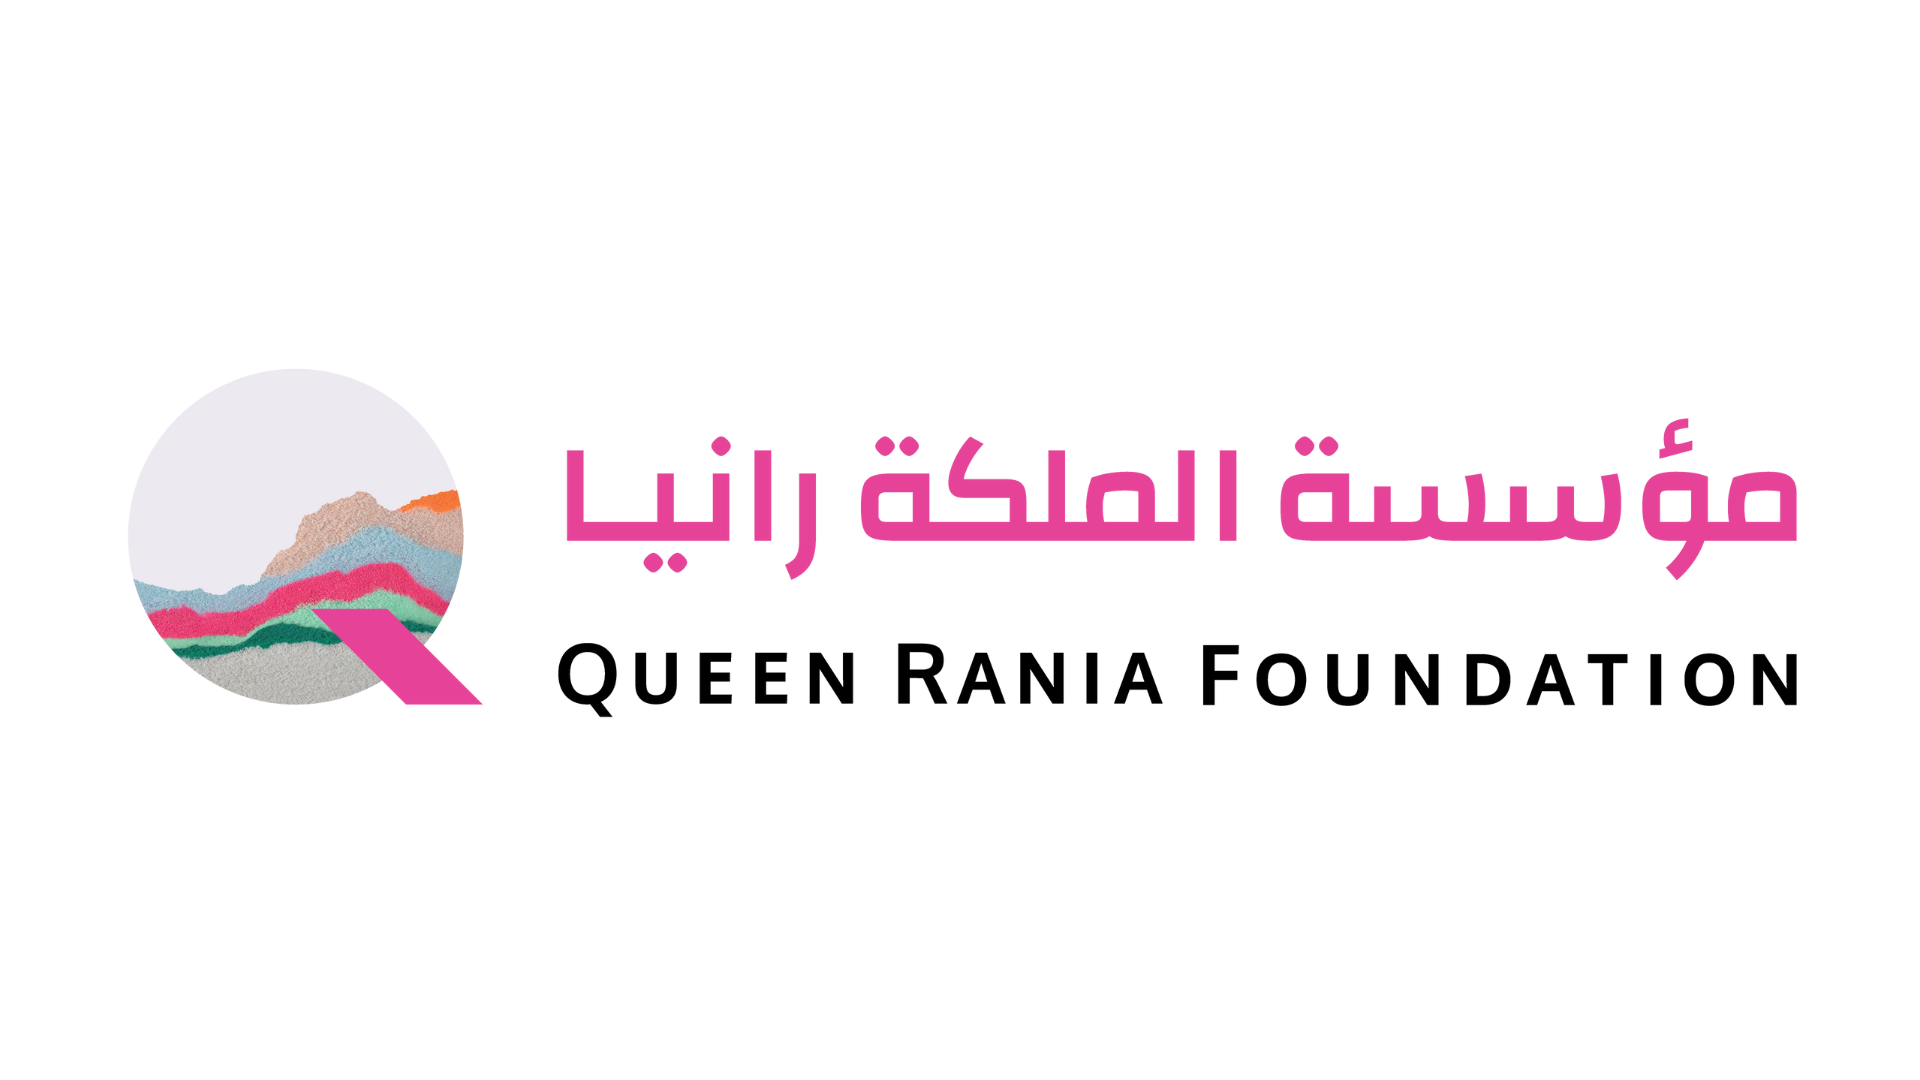 Queen Rania Foundation logo